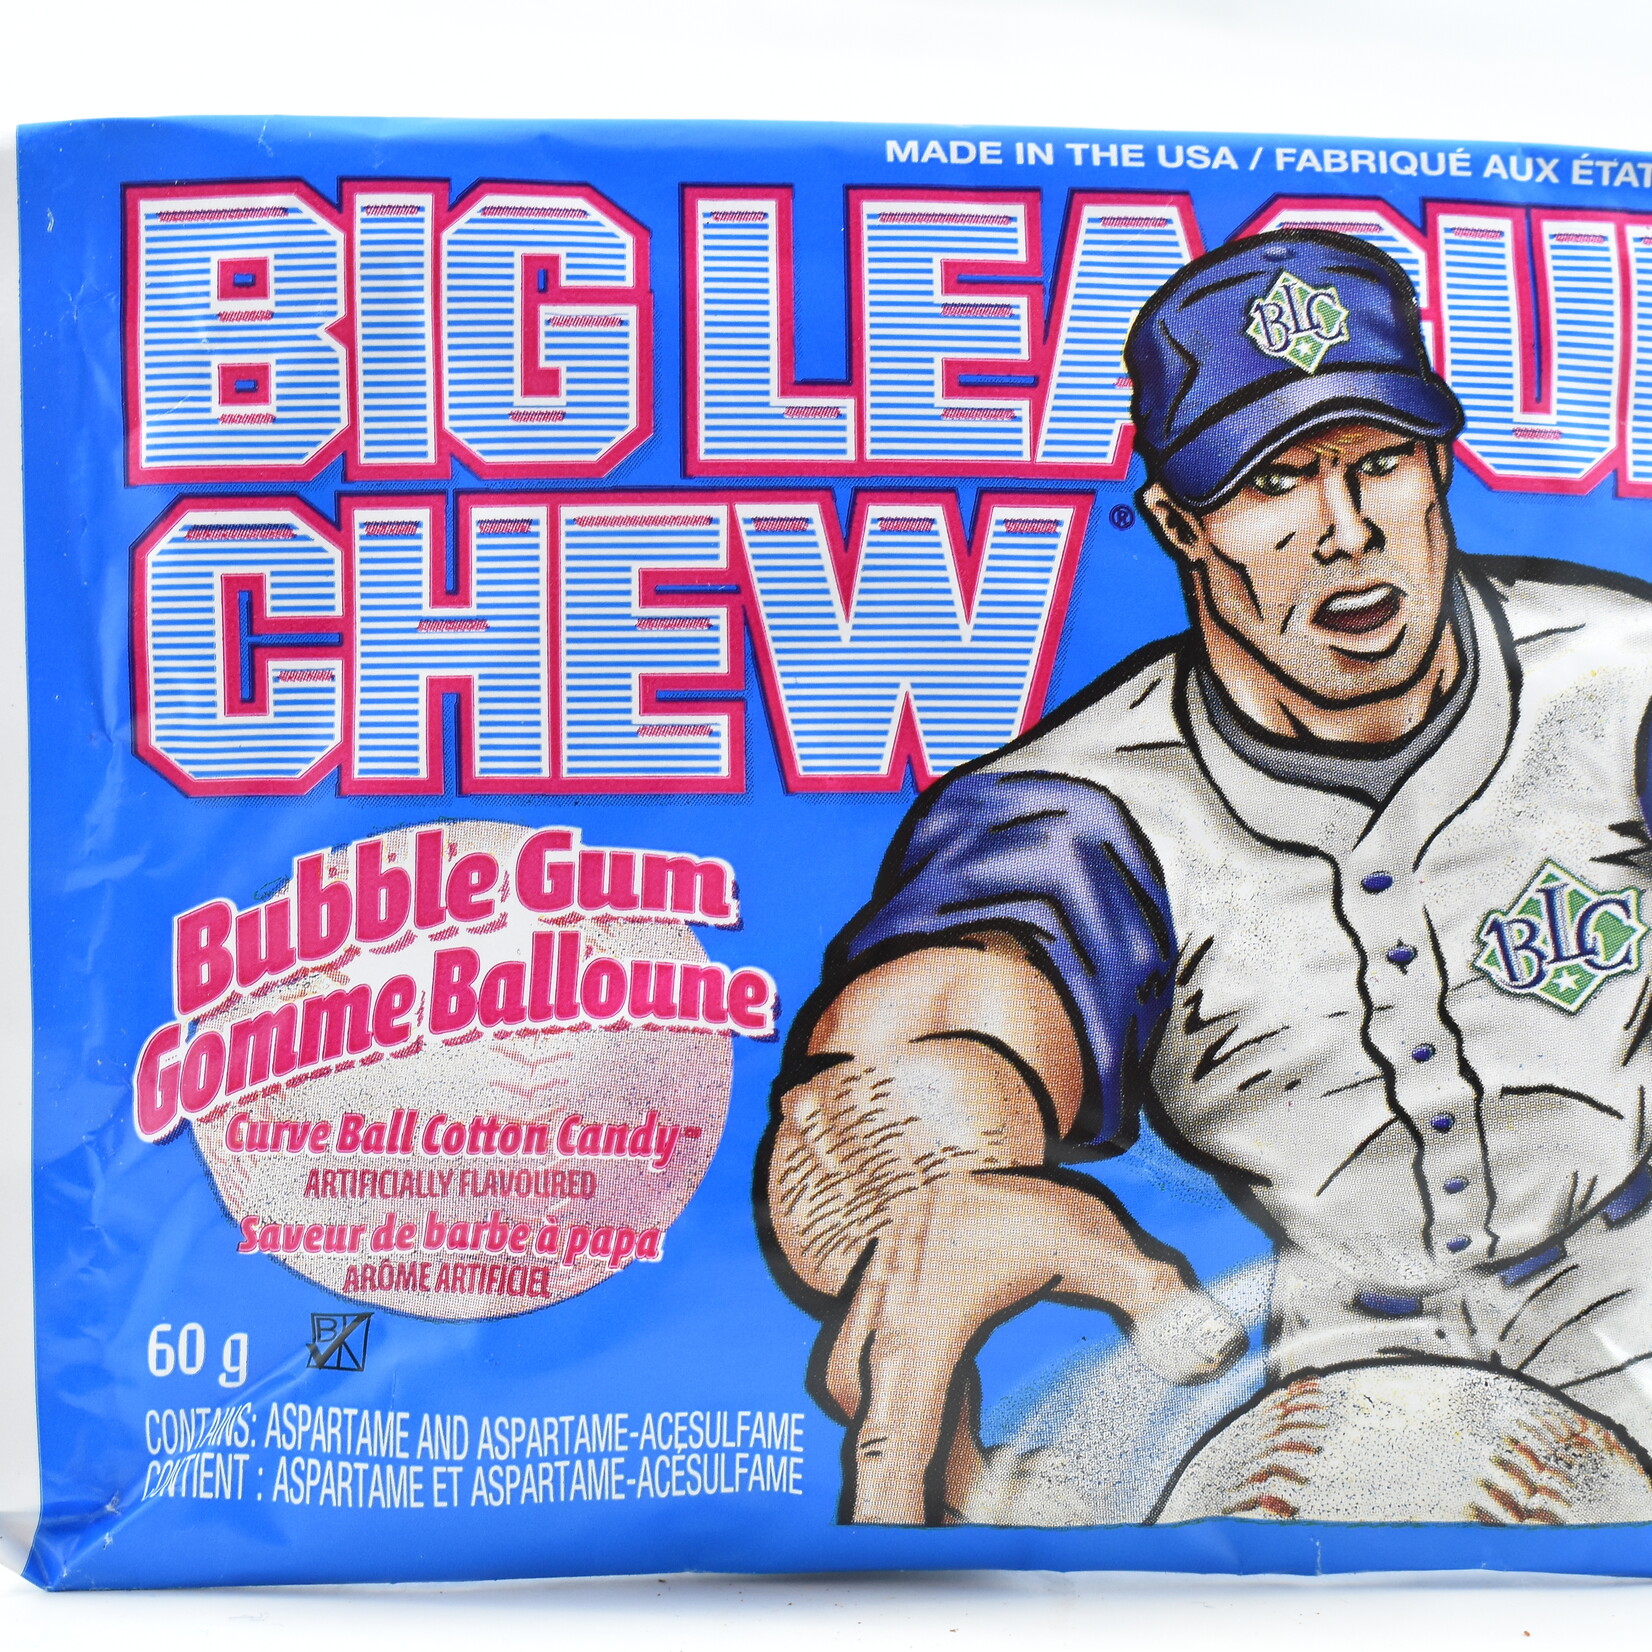 Big League Chew Big League Chew cotton candy gum 60g